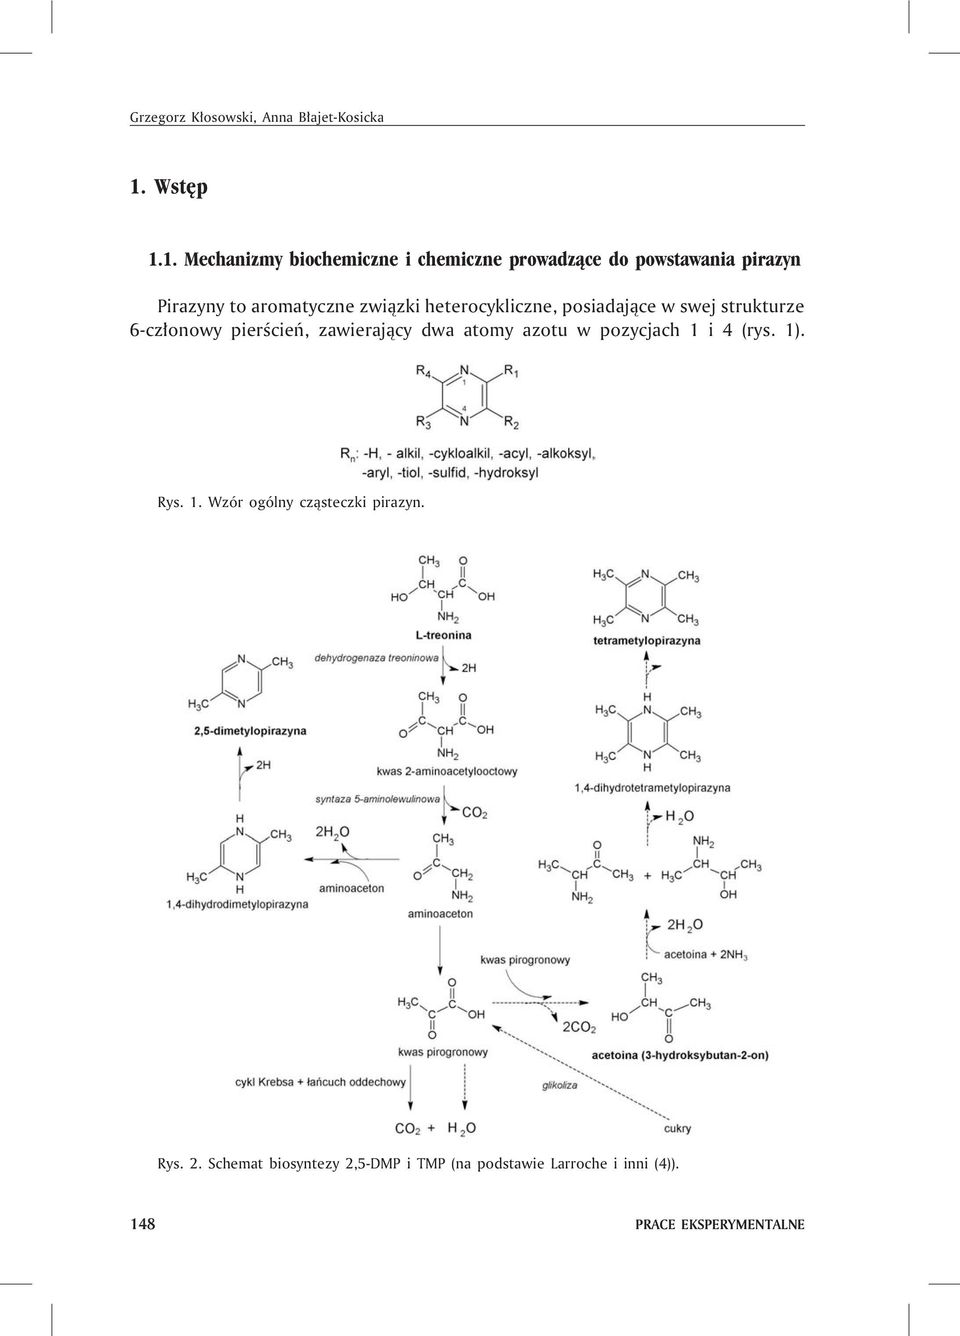 1. Mechanizmy biochemiczne i chemiczne prowadz¹ce do powstawania pirazyn Pirazyny to aromatyczne zwi¹zki